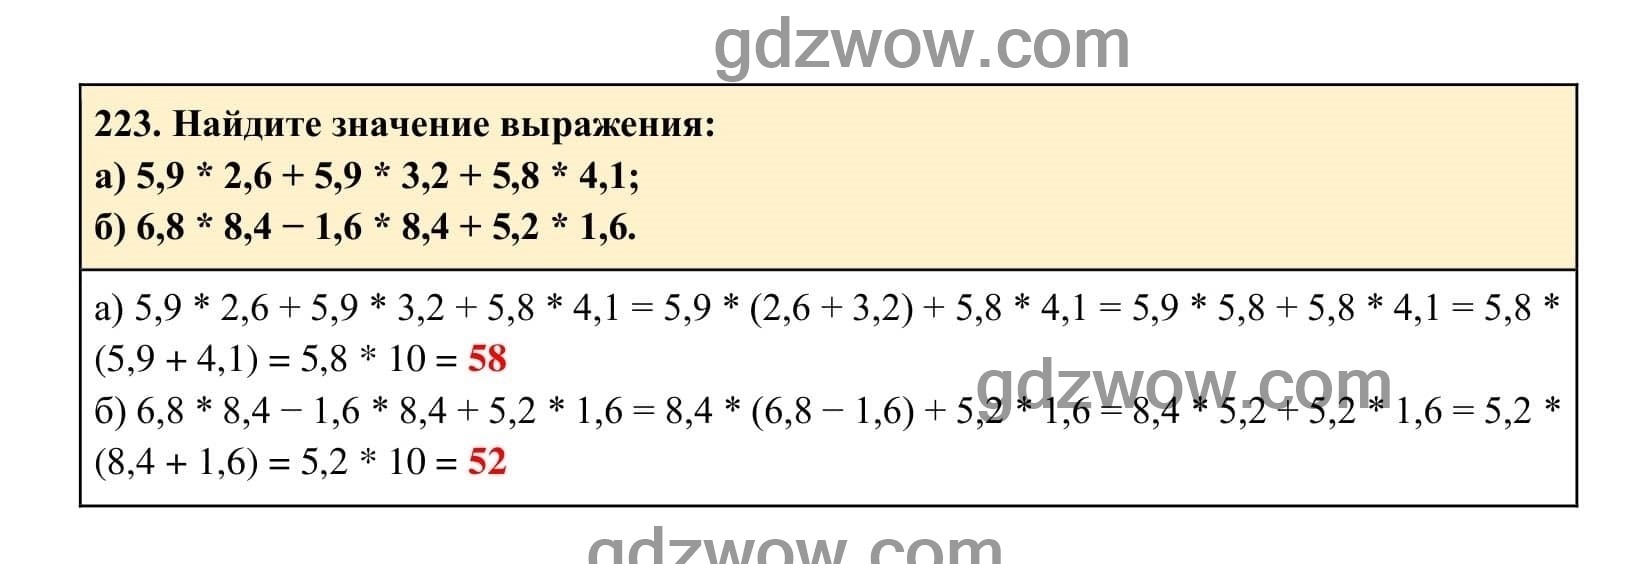 Упражнение 223 - ГДЗ по Алгебре 7 класс Учебник Макарычев (решебник) - GDZwow